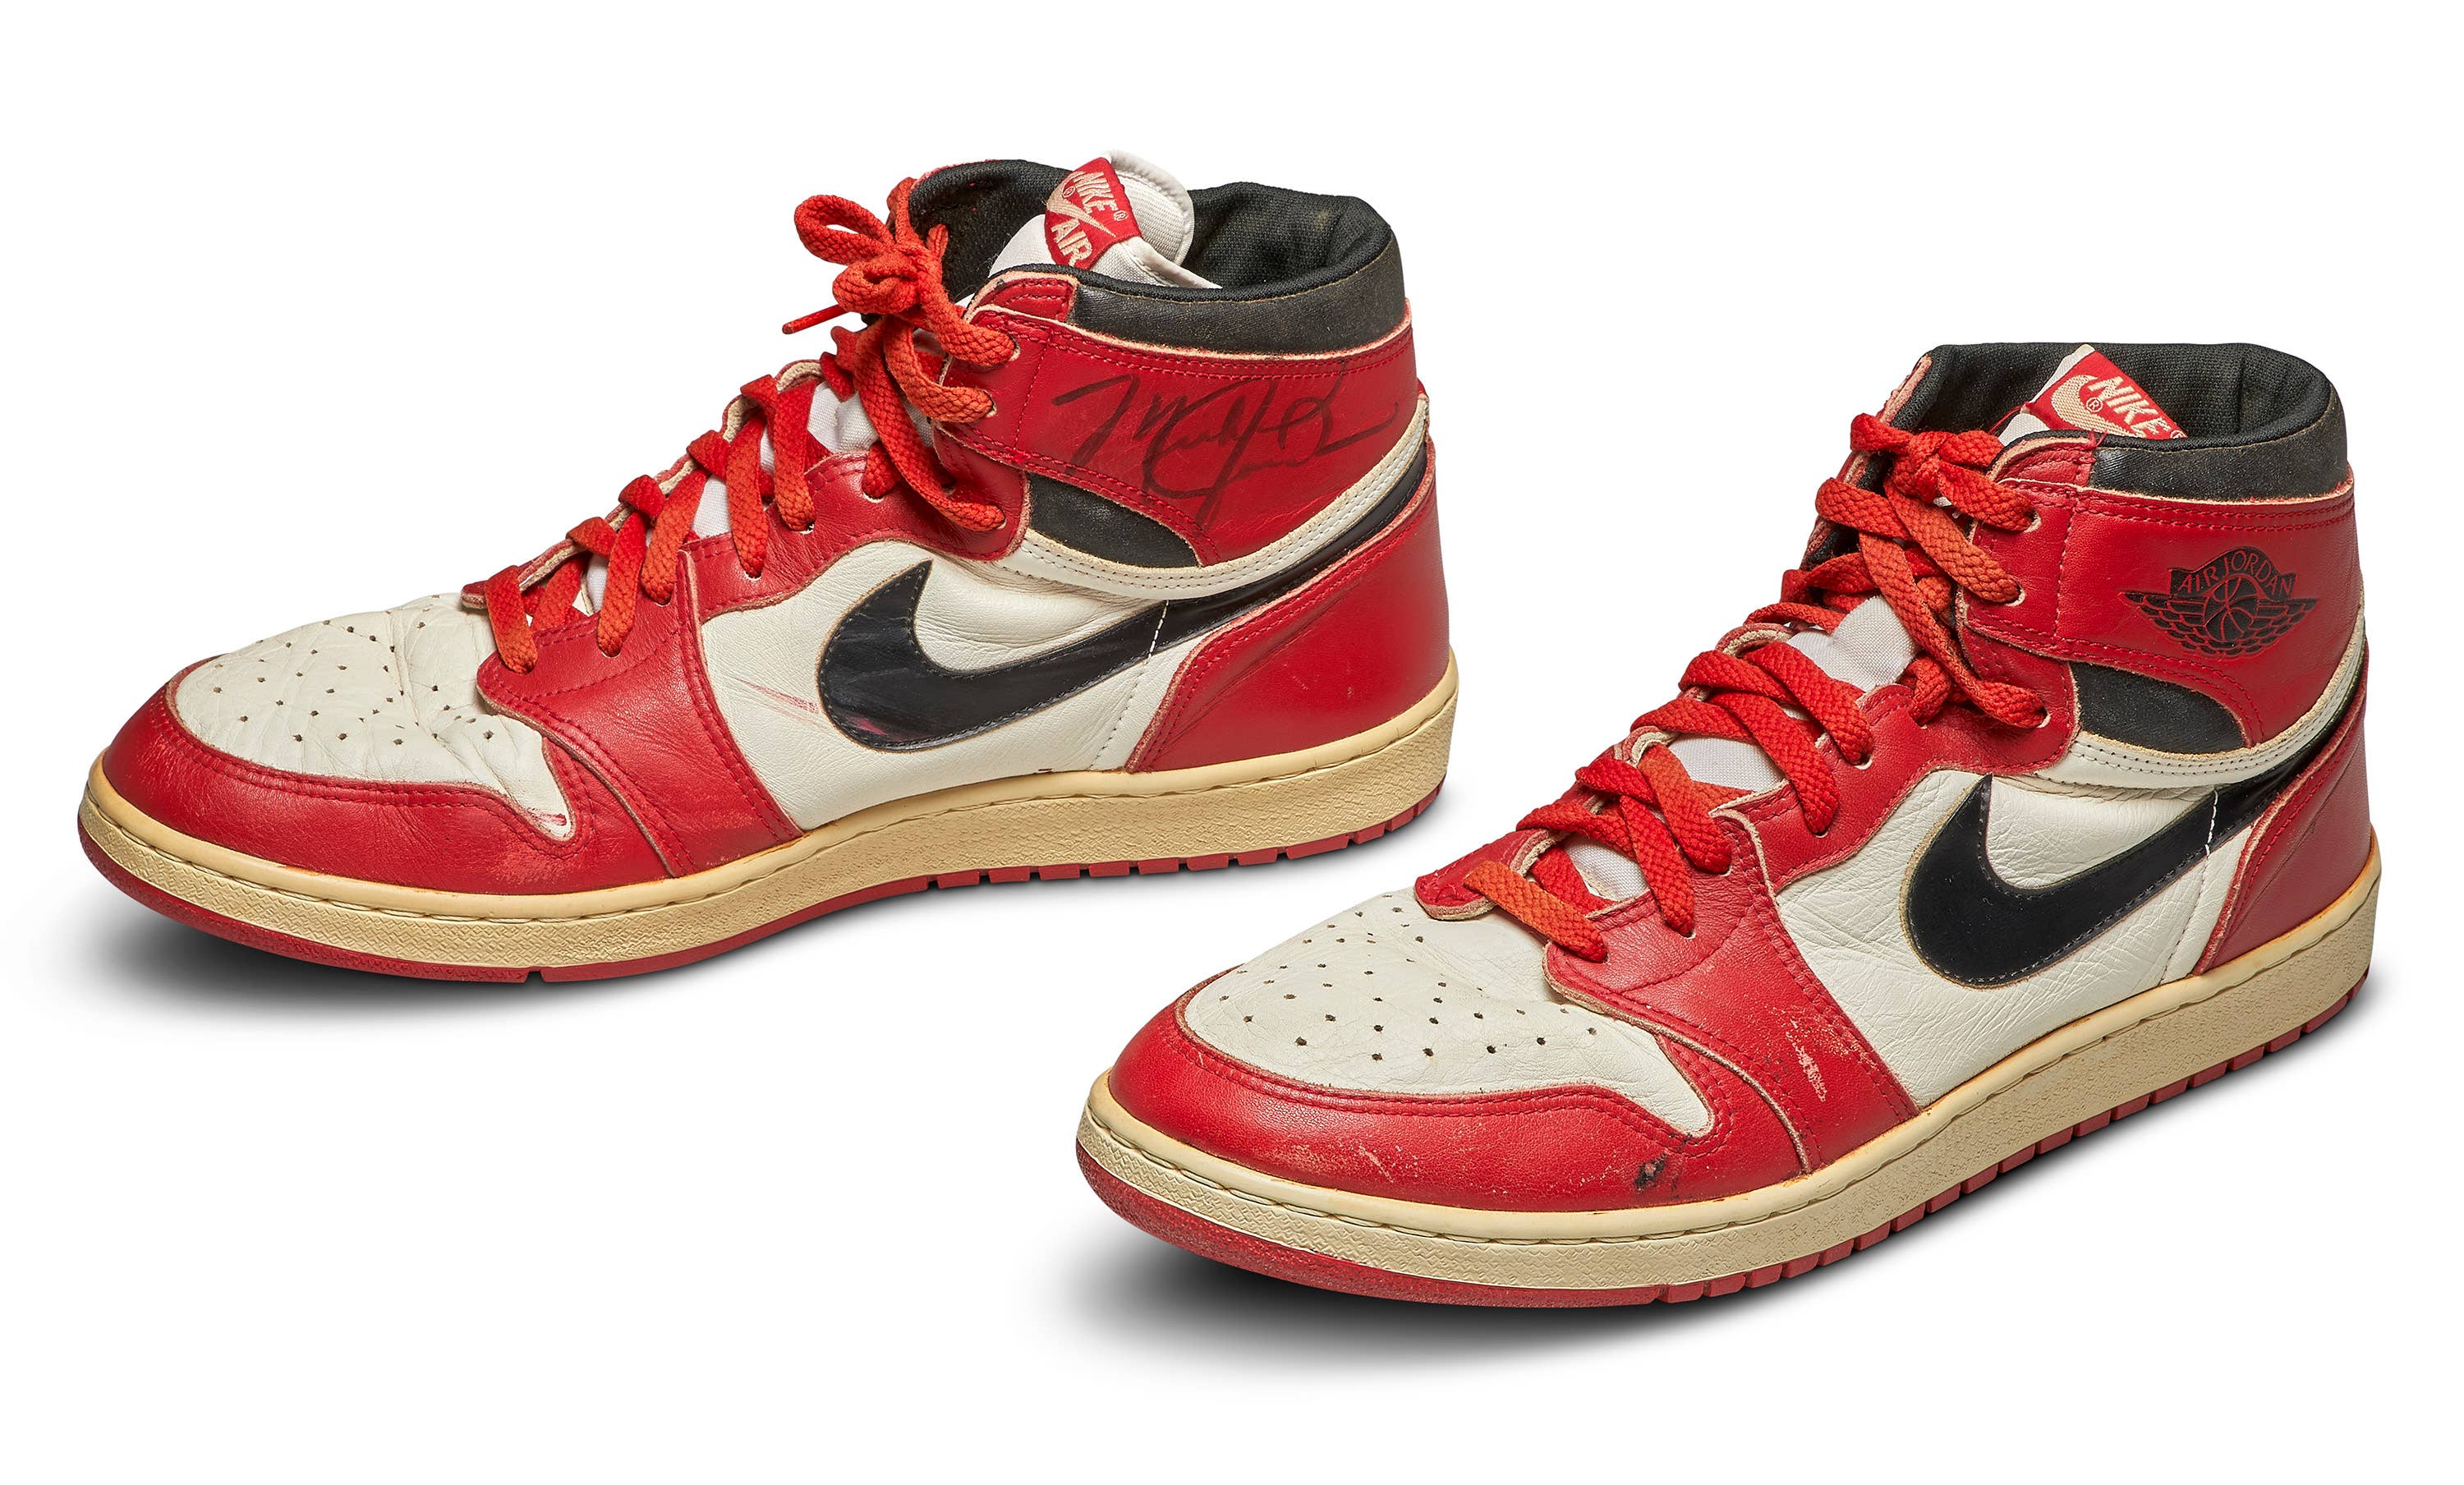 Folkeskole forstørrelse bidragyder Original Air Jordan Exclusive Breaks Record For Most Expensive Sneaker |  Complex